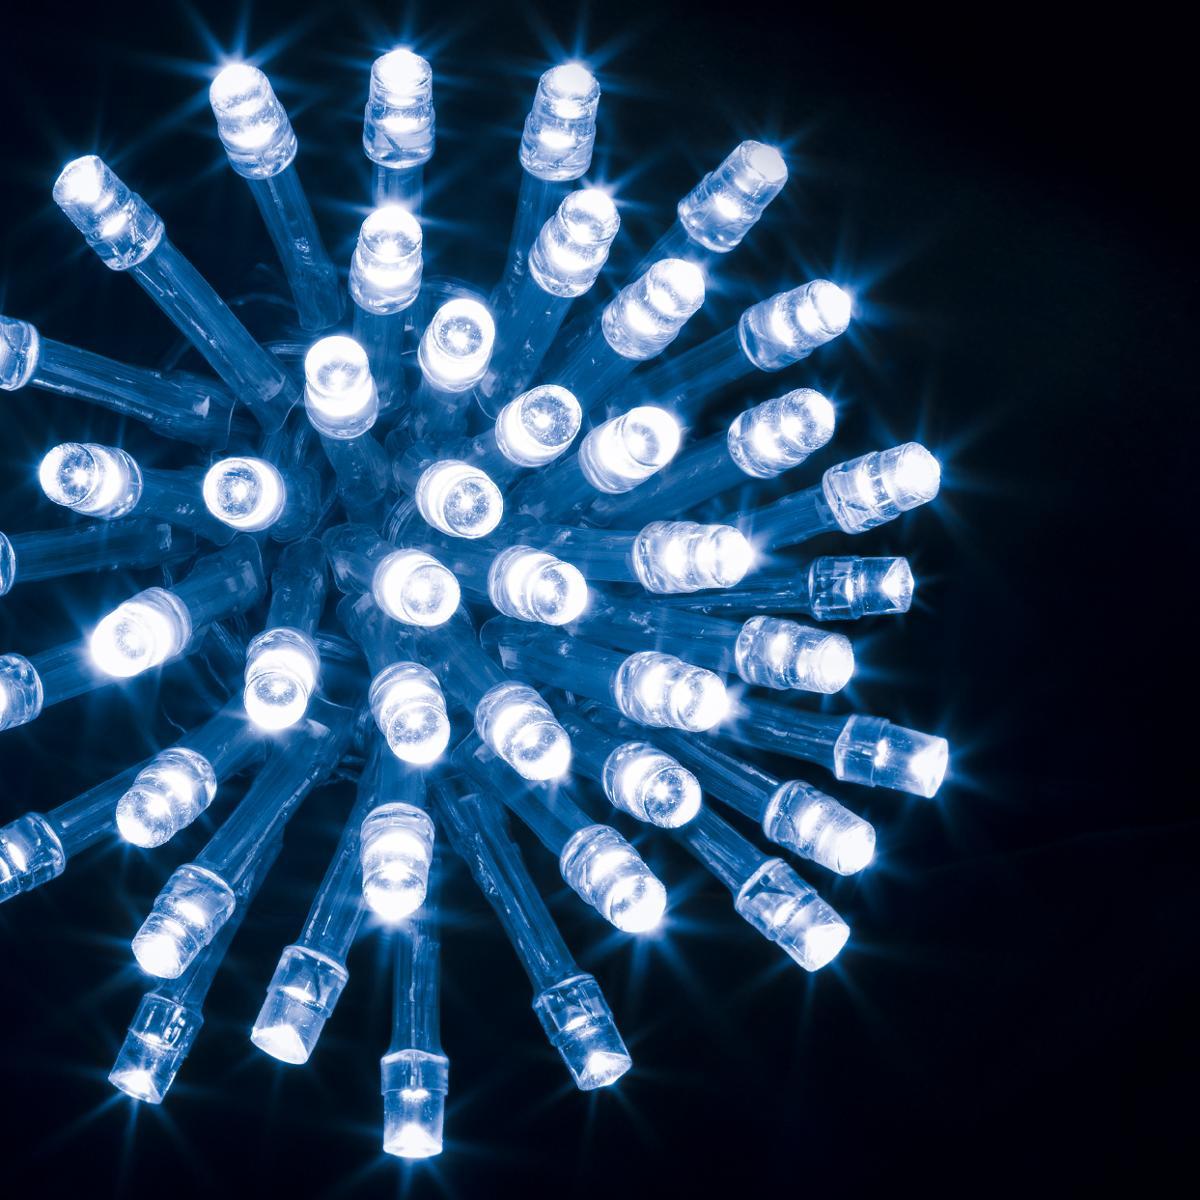 Guirlande lumineuse extérieur extérieur 200 LED bleu 20m s professionnels -  Decoration Brands